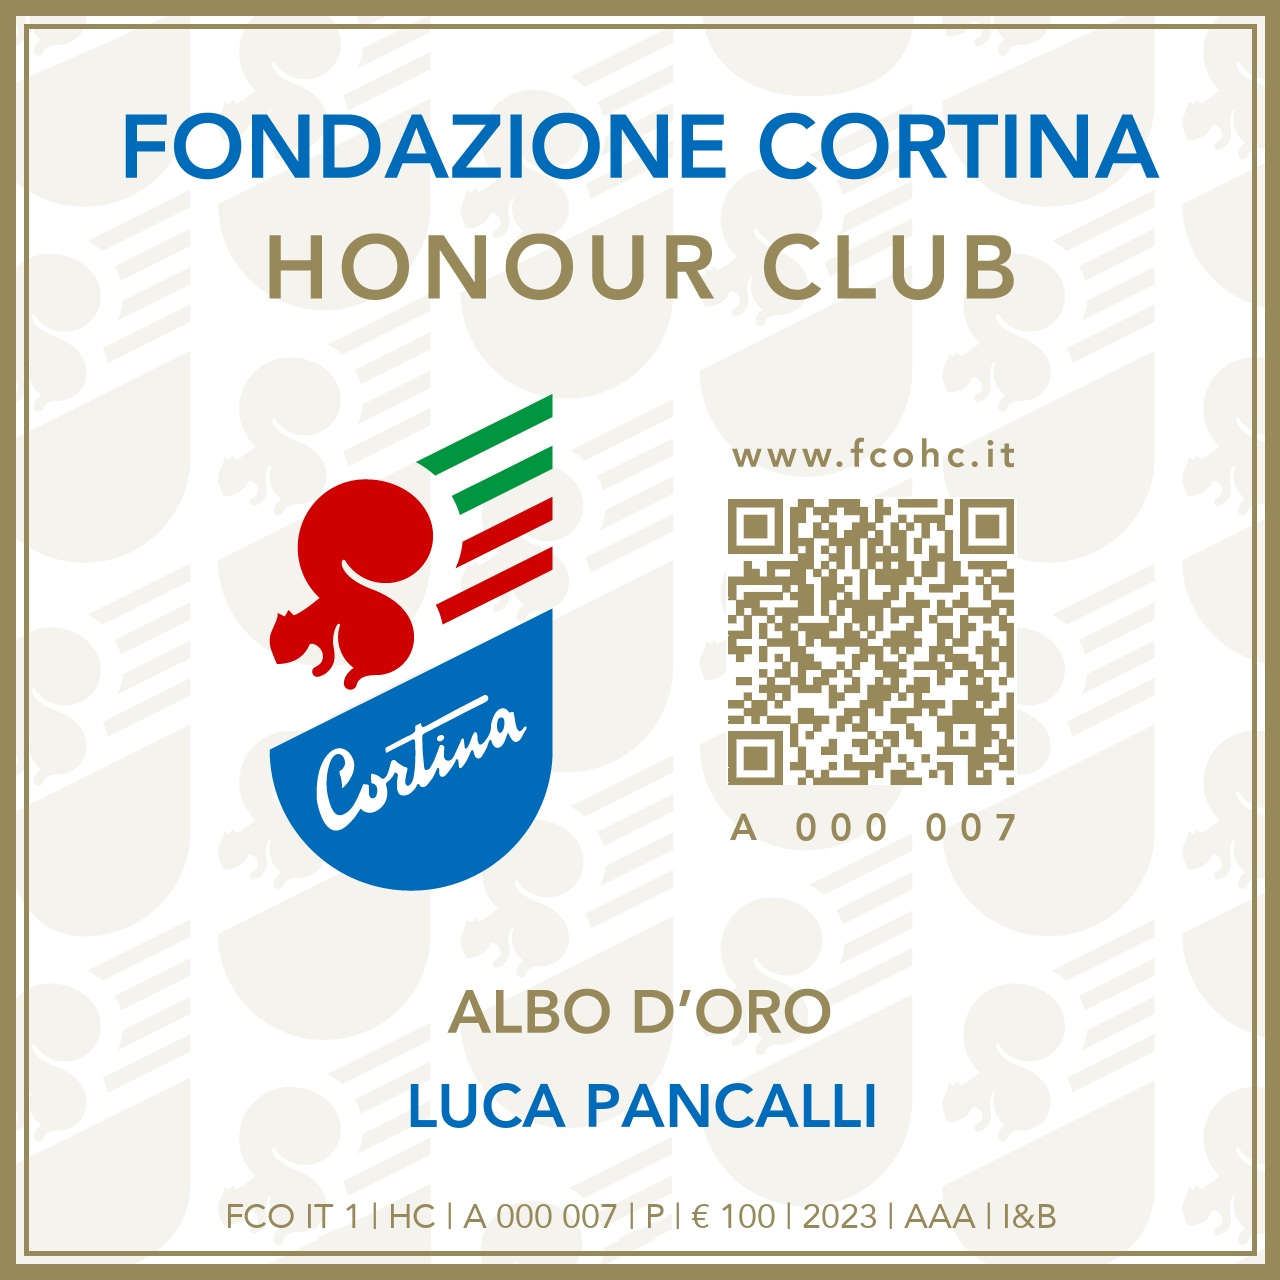 Fondazione Cortina Honour Club - Token Id A 000 007 - LUCA PANCALLI